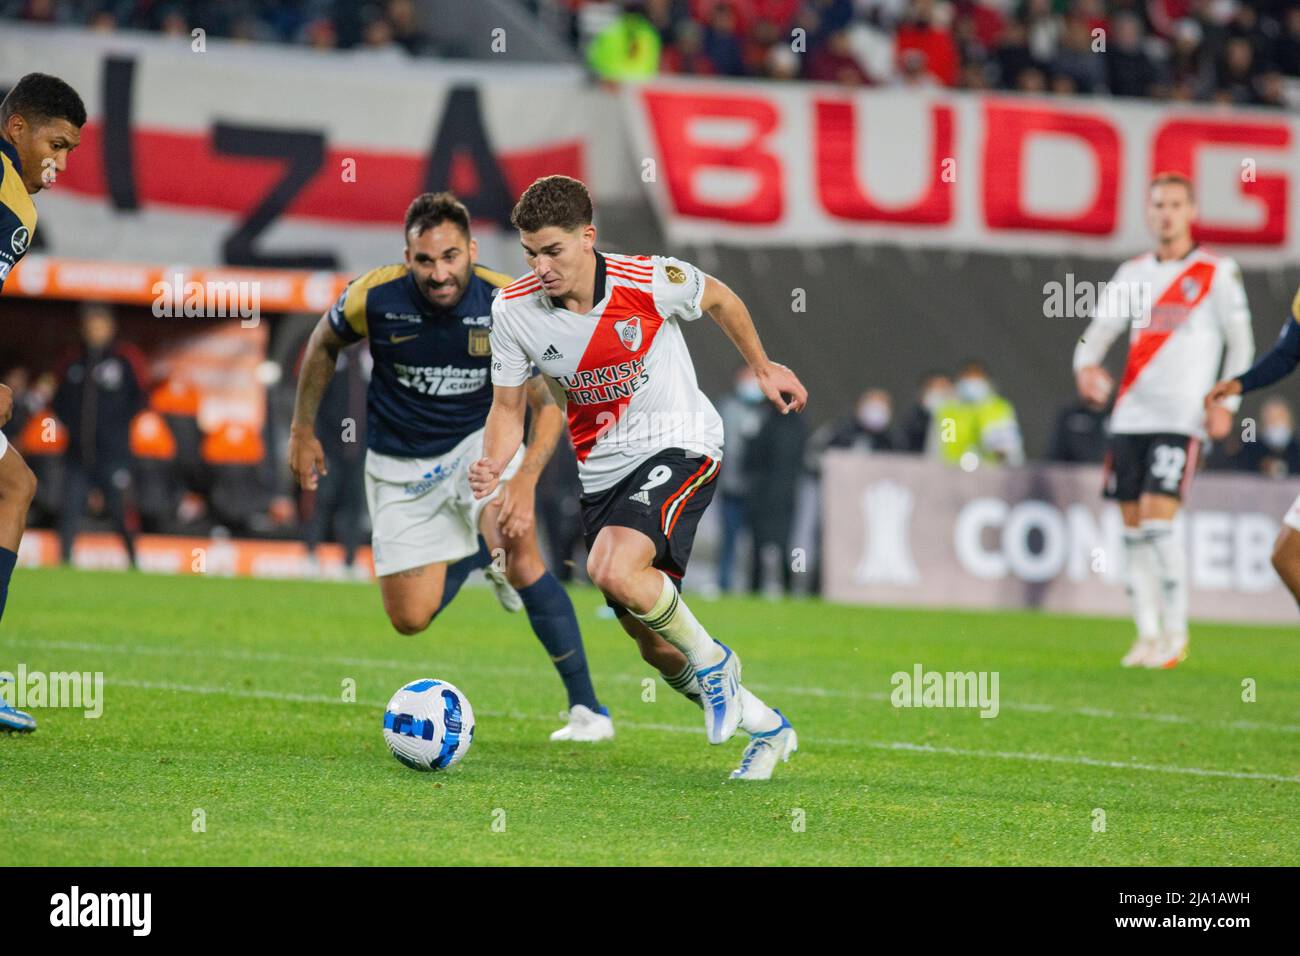 Eines der neuesten Spiele von Julian Alvarez, Fußballspieler aus River Plate, Argentinien. Stockfoto